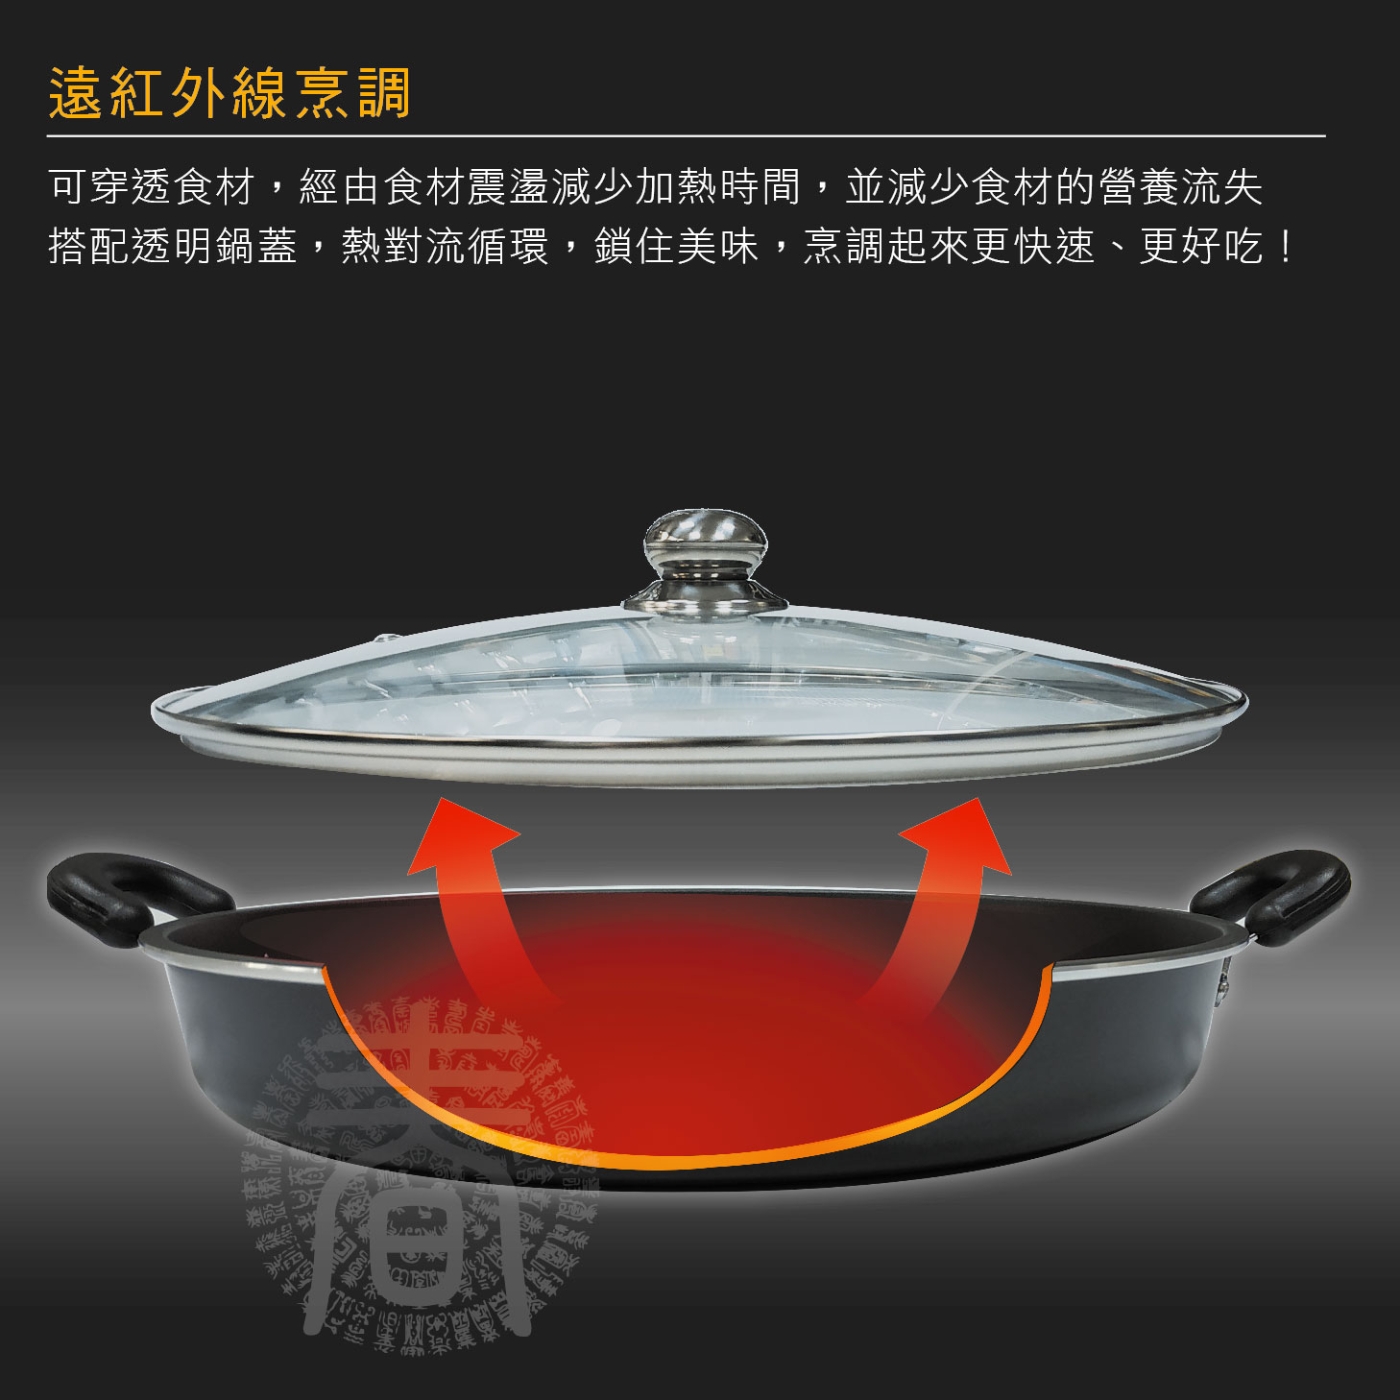 派樂 遠紅外線料理盤超大煎烤盤40cm含玻璃鍋蓋